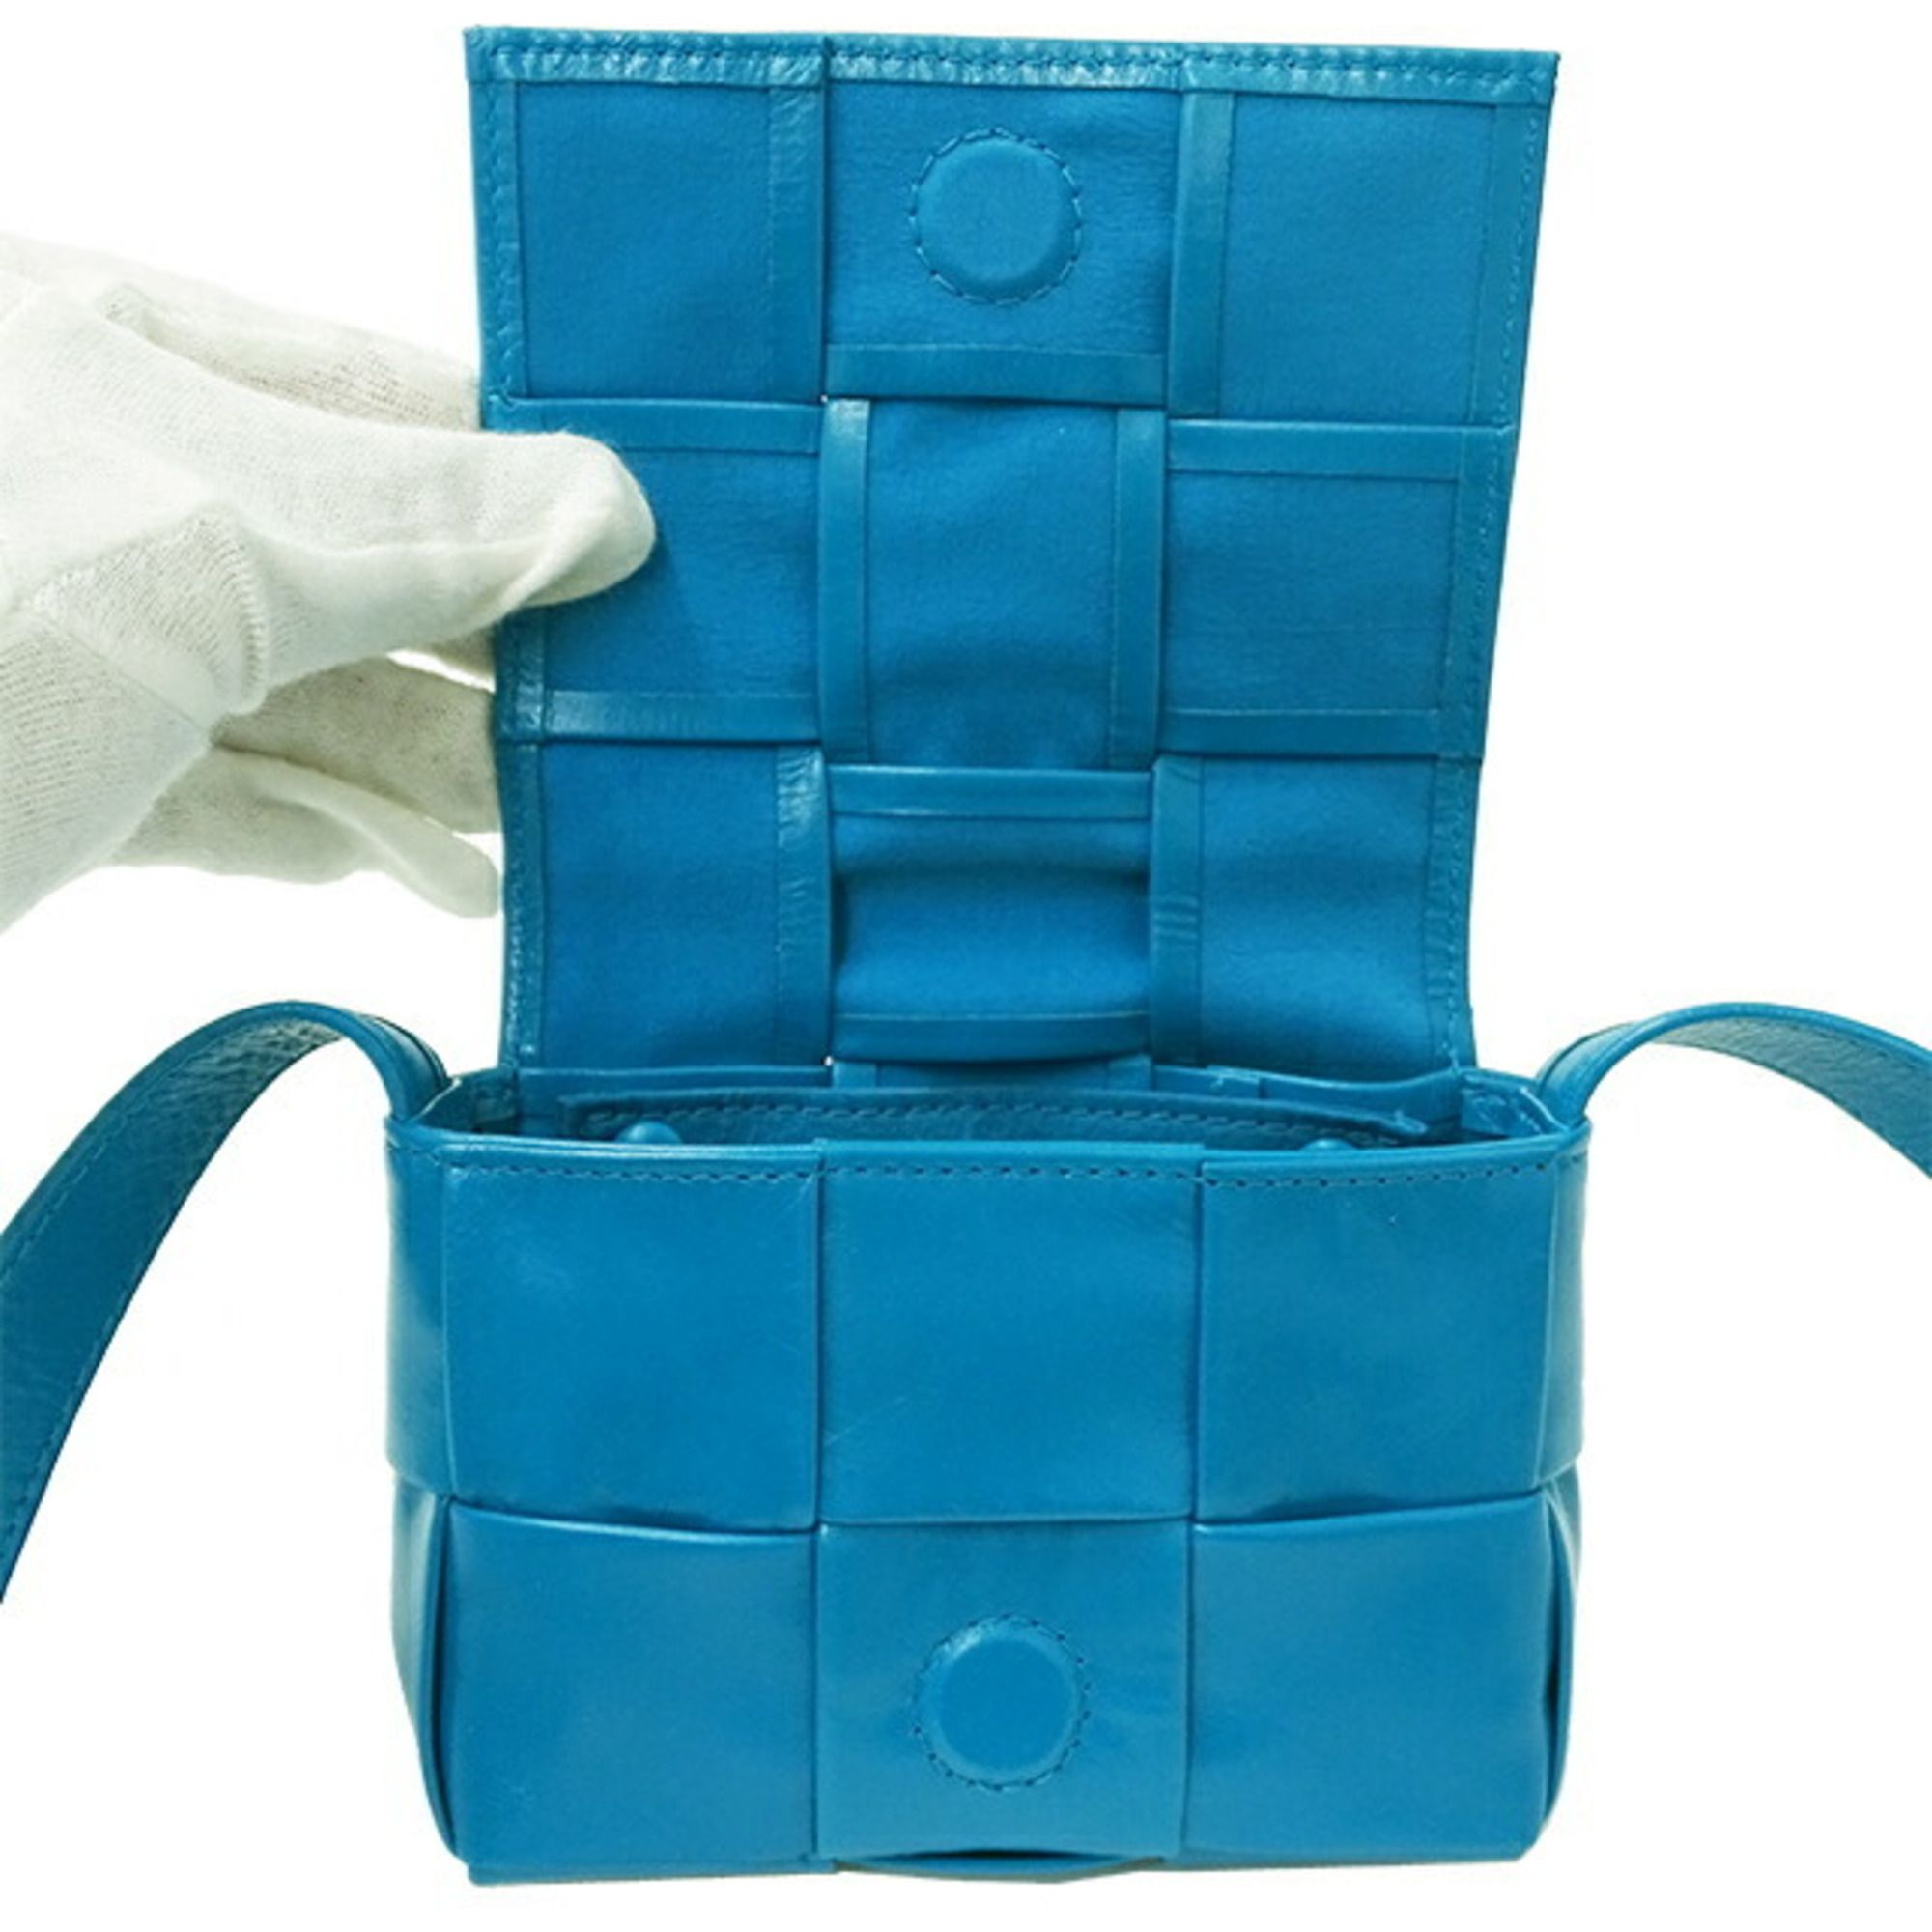 Bottega Veneta BOTTEGAVENETA Bag Women's Maxi Intrecciato Shoulder Lambskin Candy Cassette Pool Blue